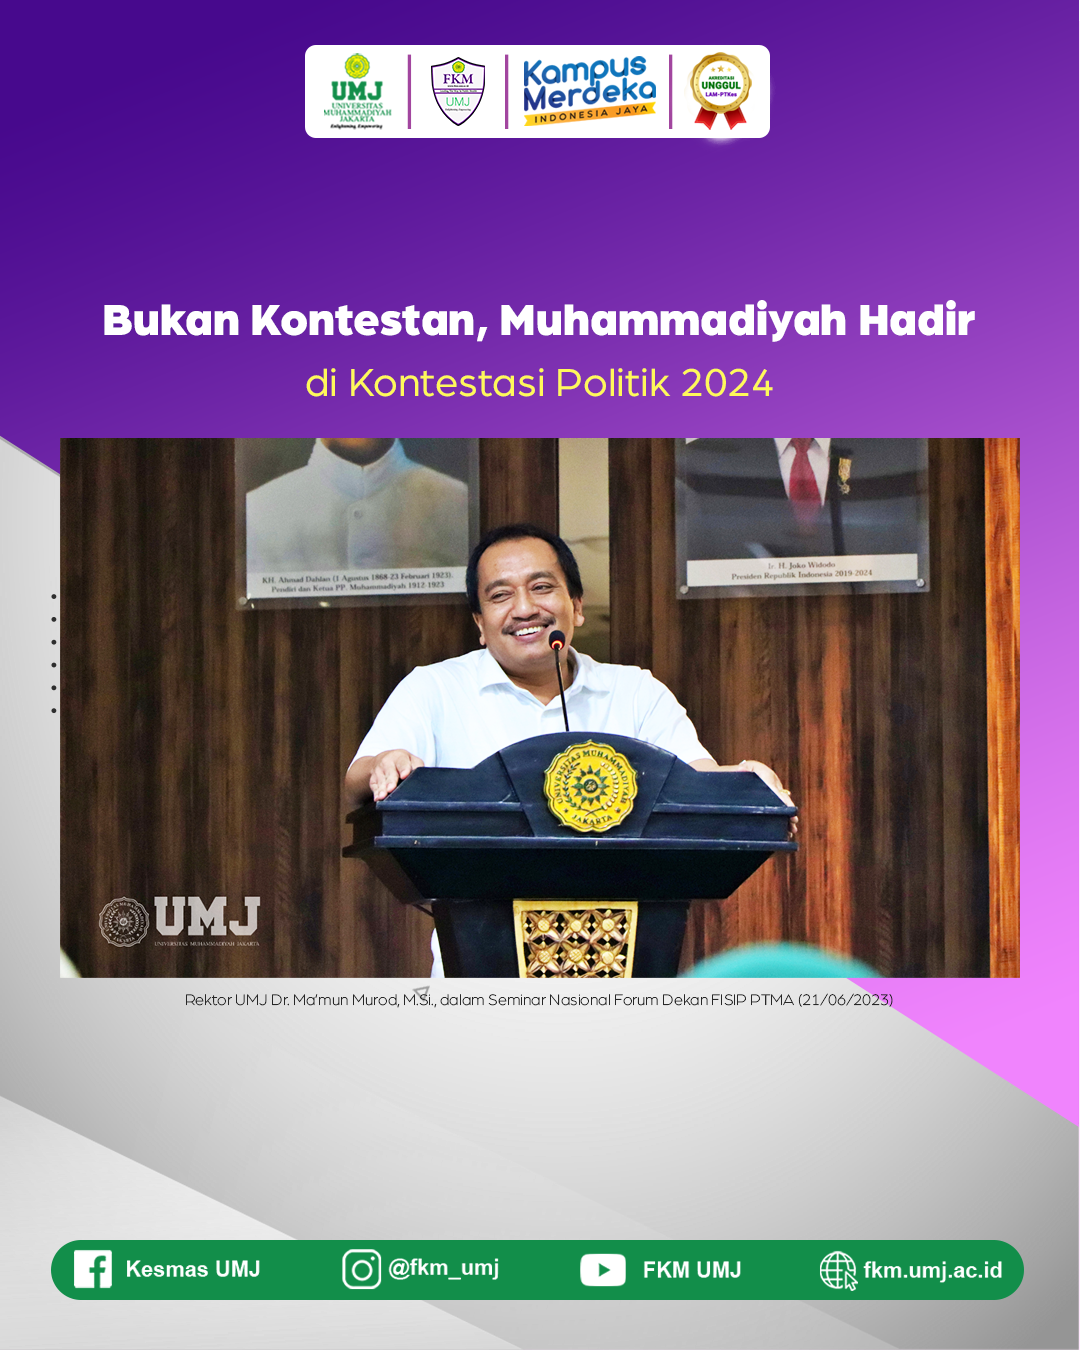 Bukan Kontestan, Muhammadiyah Hadir di Kontestasi Politik 2024